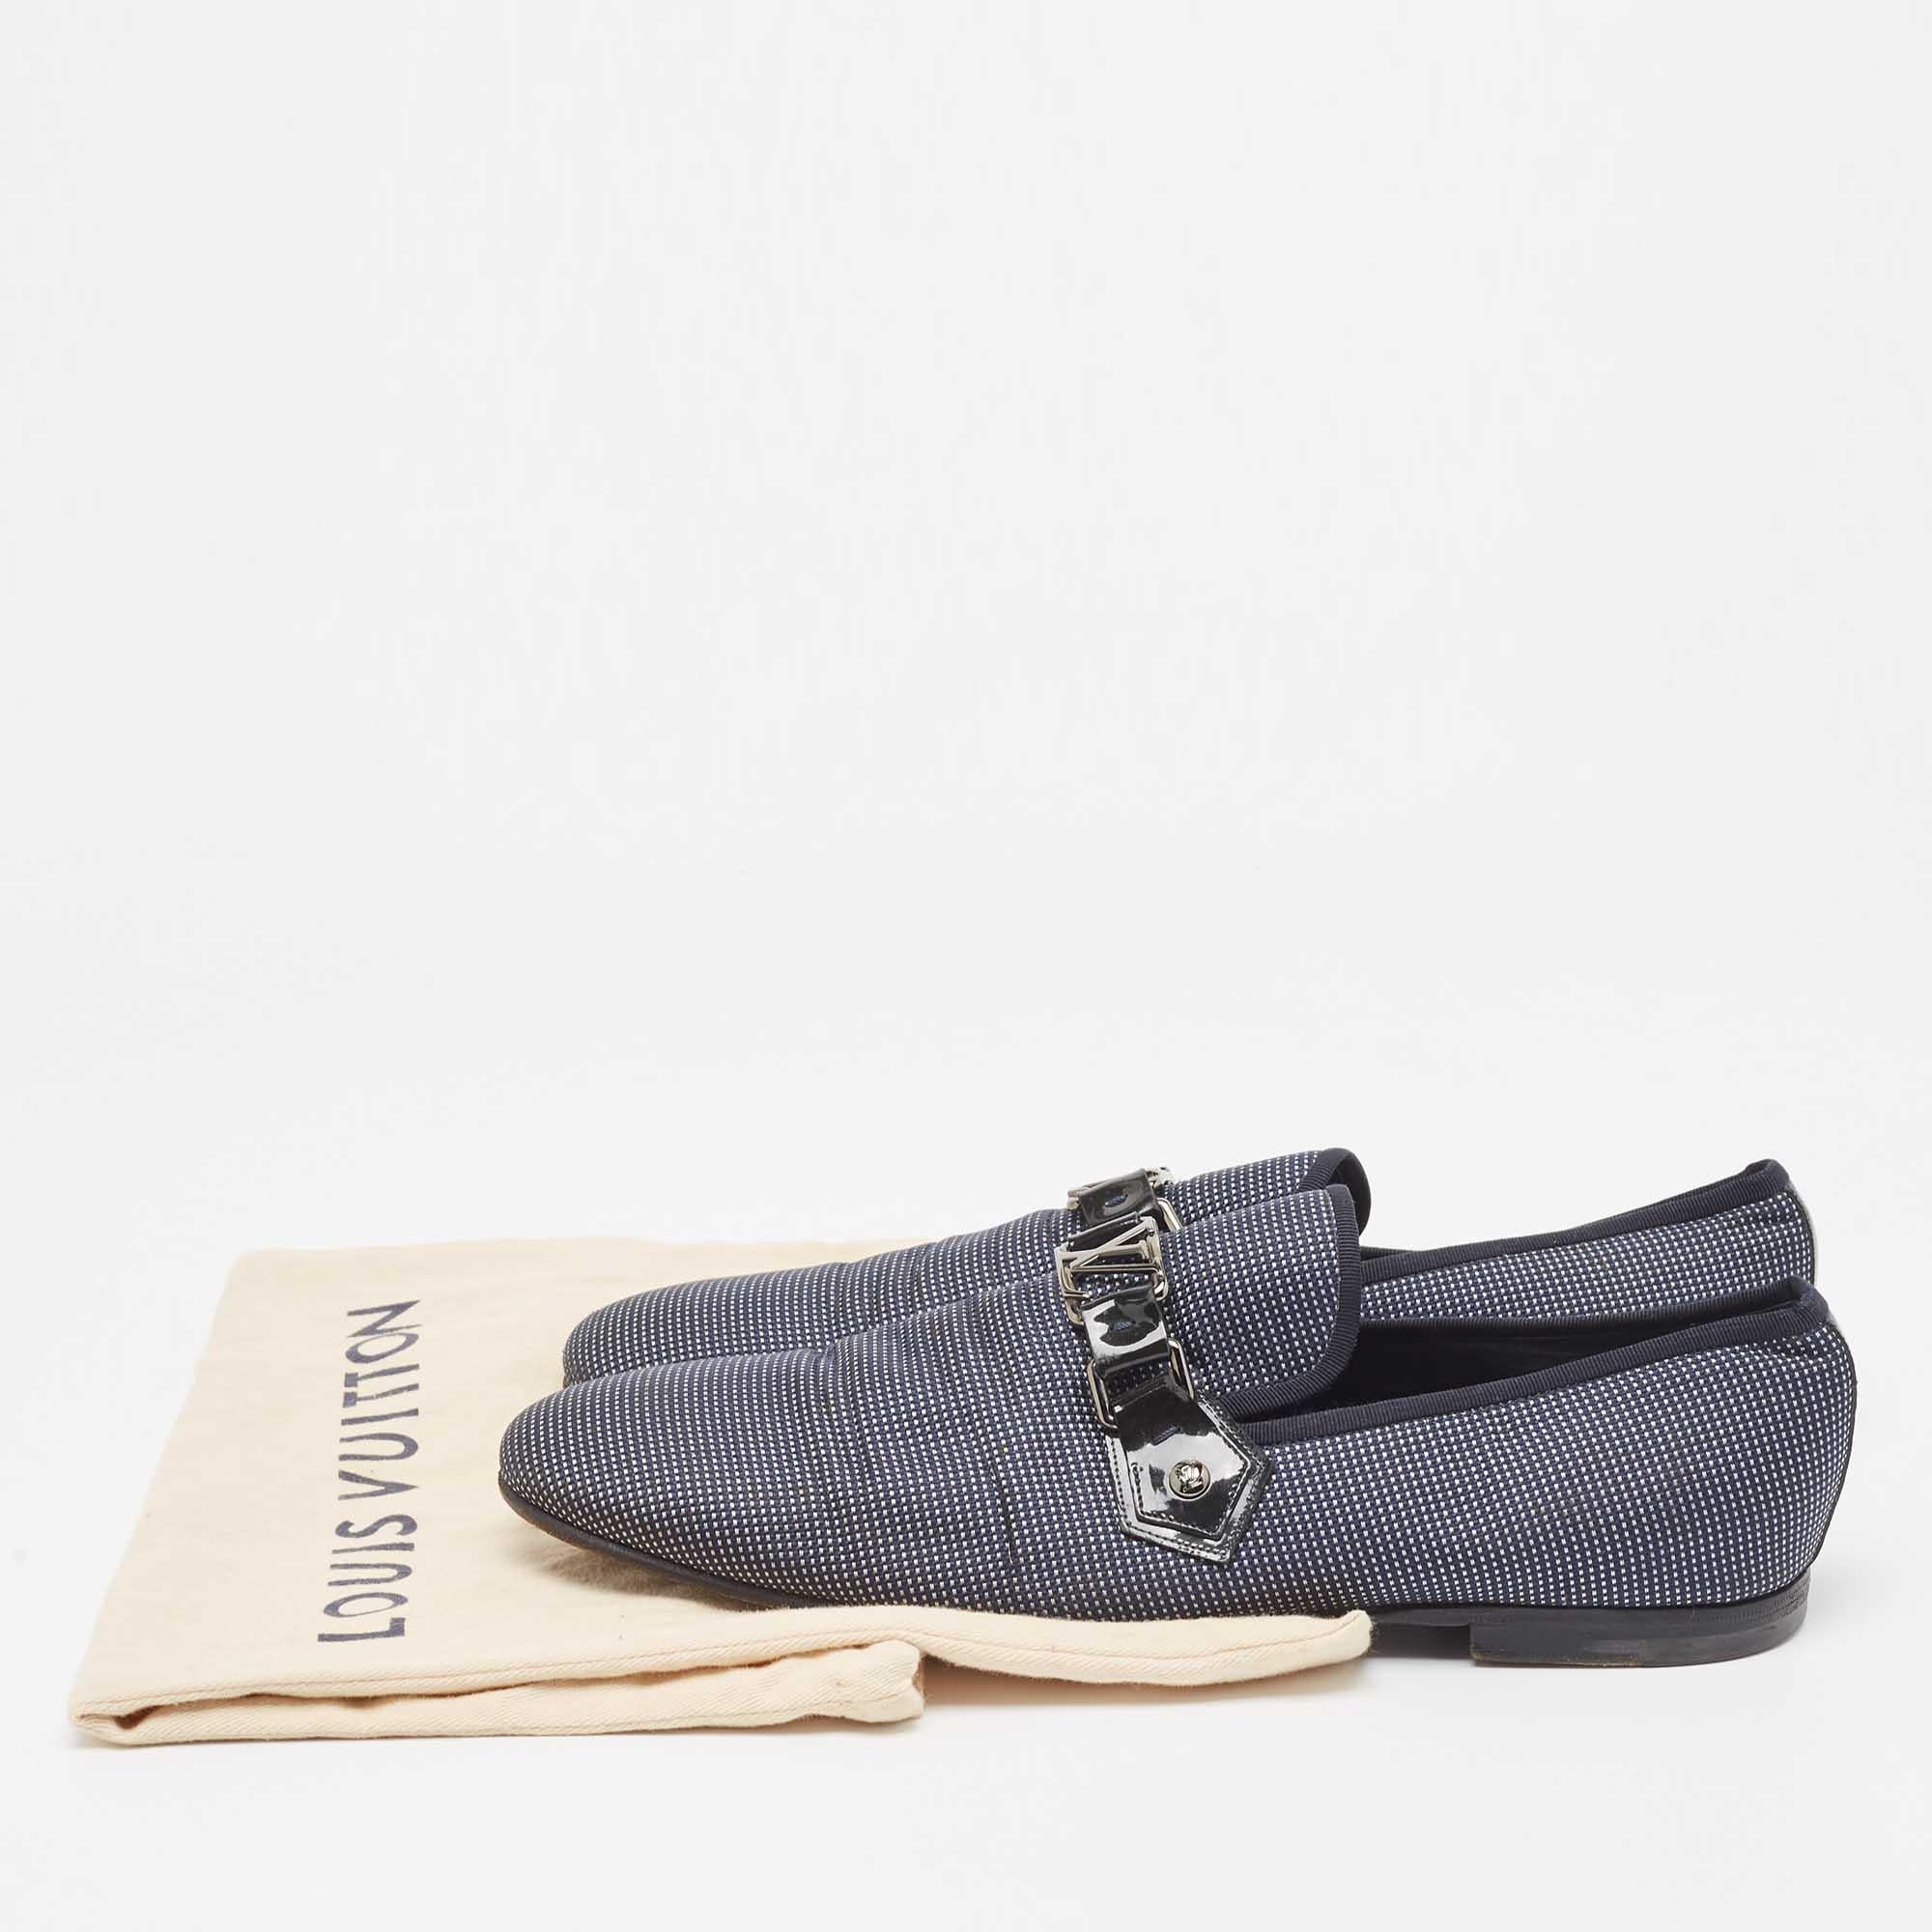 Louis Vuitton Navy Blue/White Canvas Hockenheim Loafers Size 43.5 5